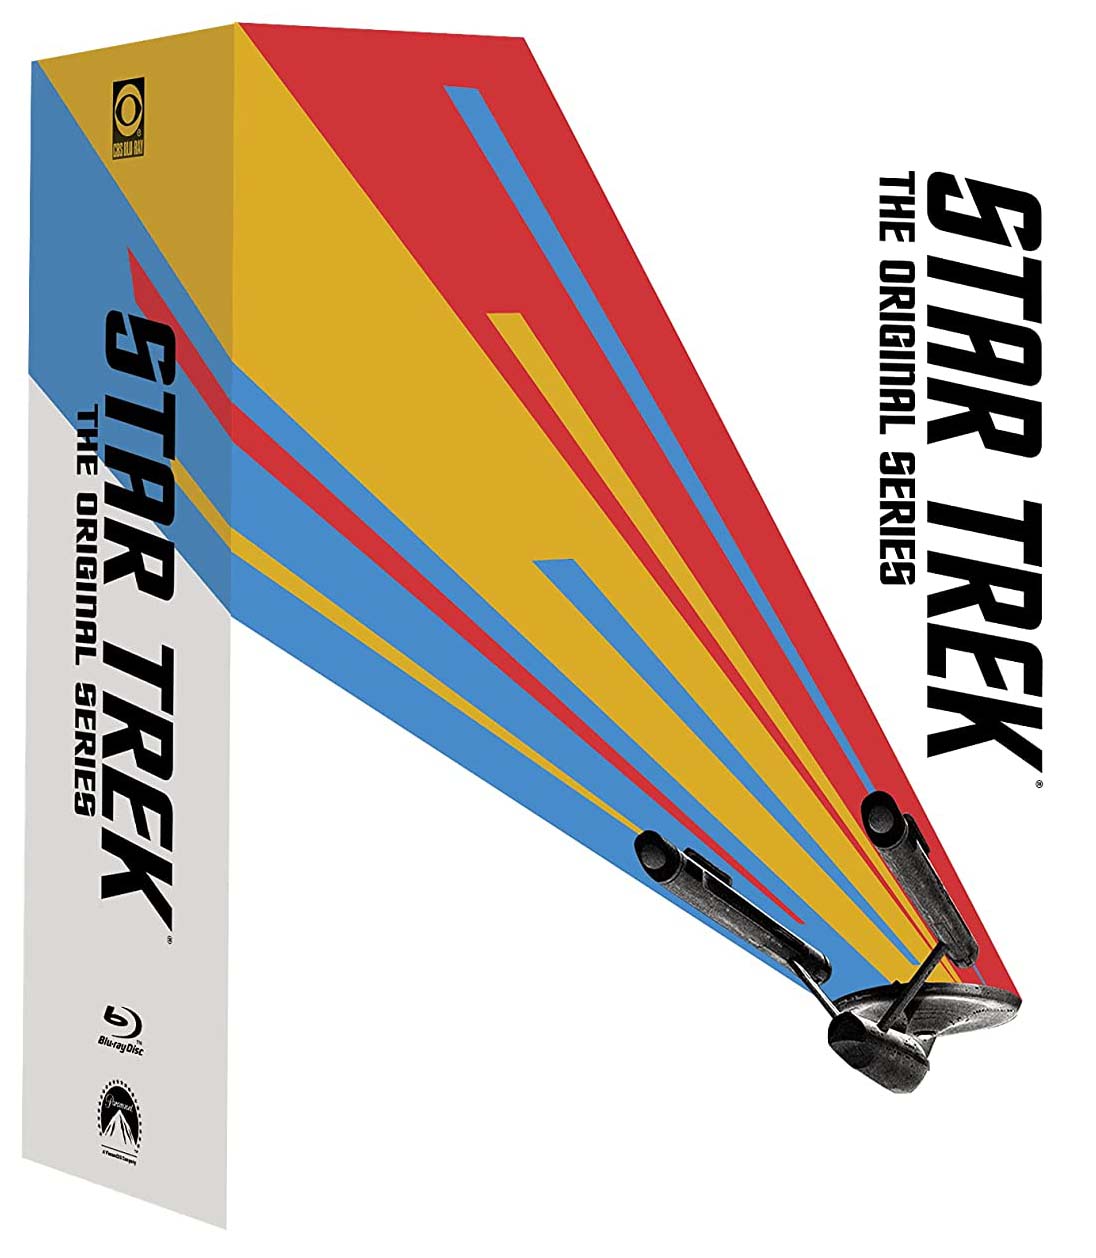 Star Trek- The Original Series- The Complete Series Blu-ray SteelBook